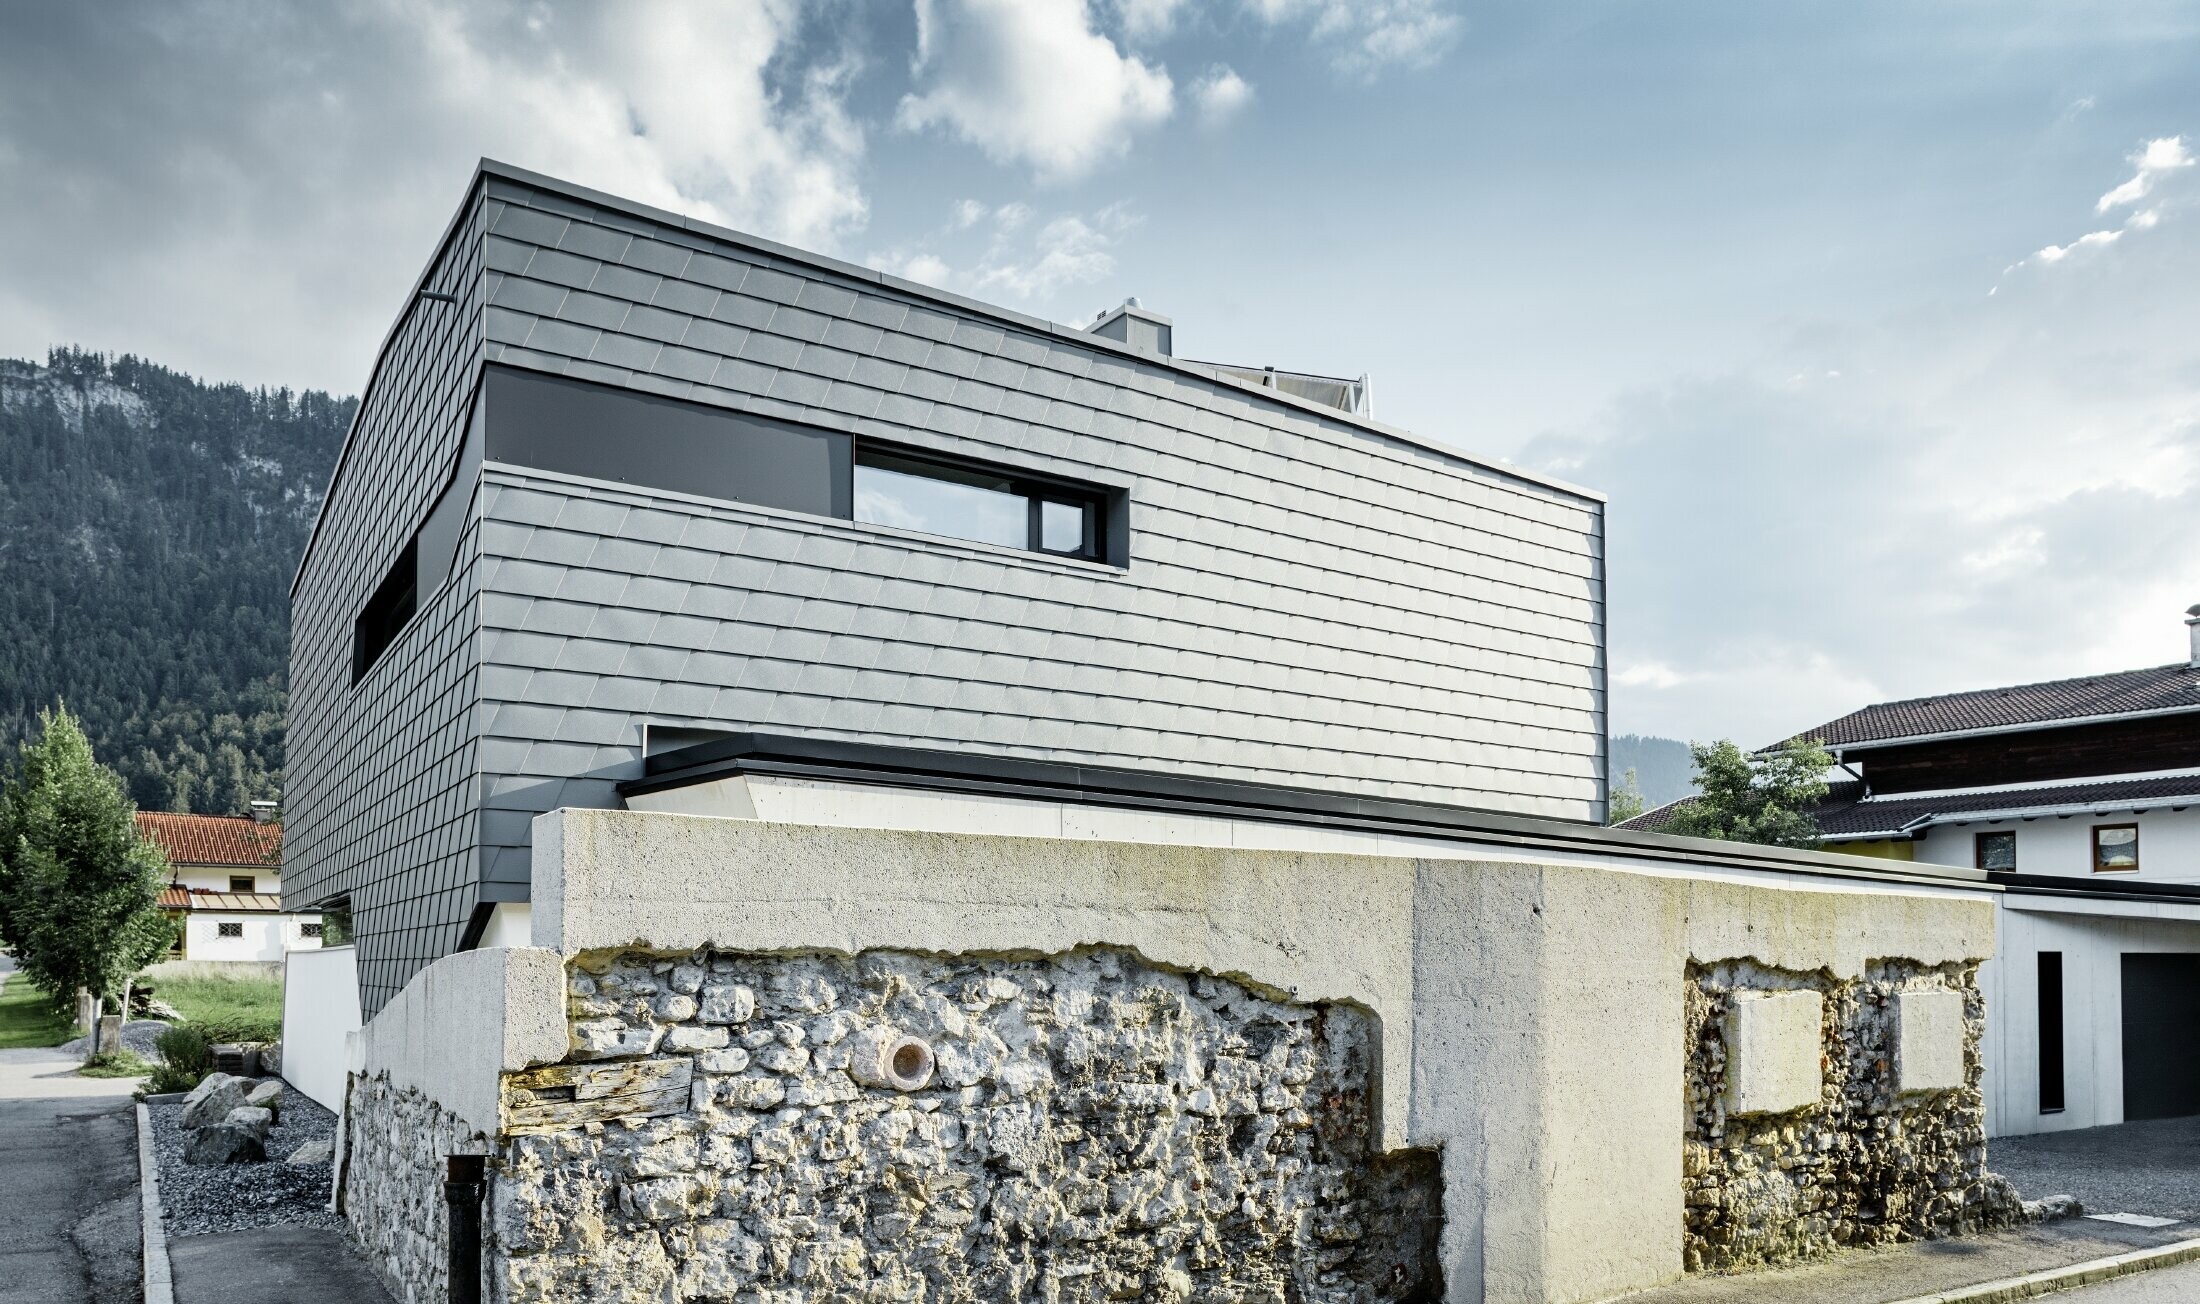 Nowoczesny dom jednorodzinny z płaskim dachem, dużymi powierzchniami okiennymi i aluminiowym łupkiem fasadowym PREFA w kolorze jasnoszarym